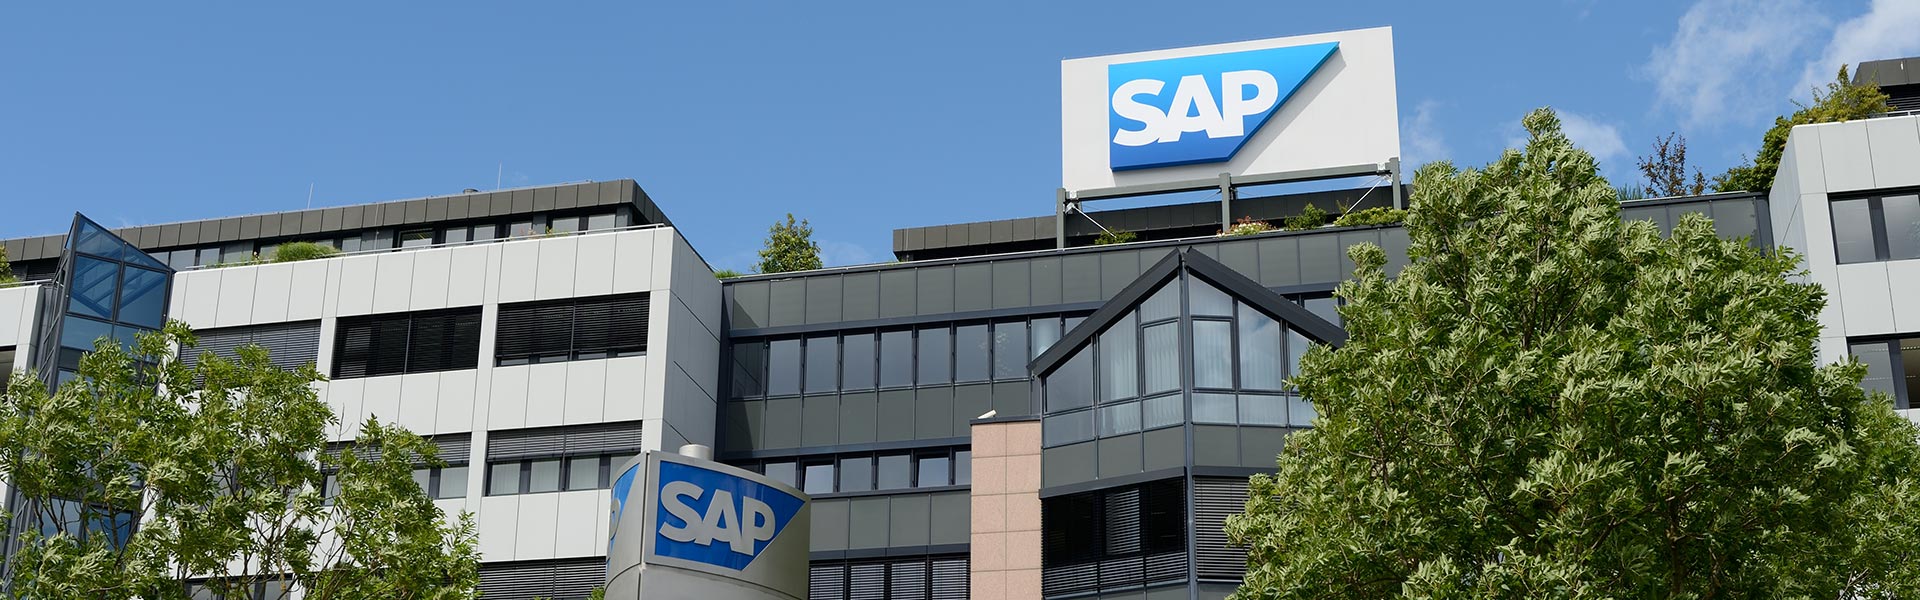 96% dos funcionários no Brasil acreditam que investir em pessoas favorece os negócios das empresas, revela pesquisa da SAP